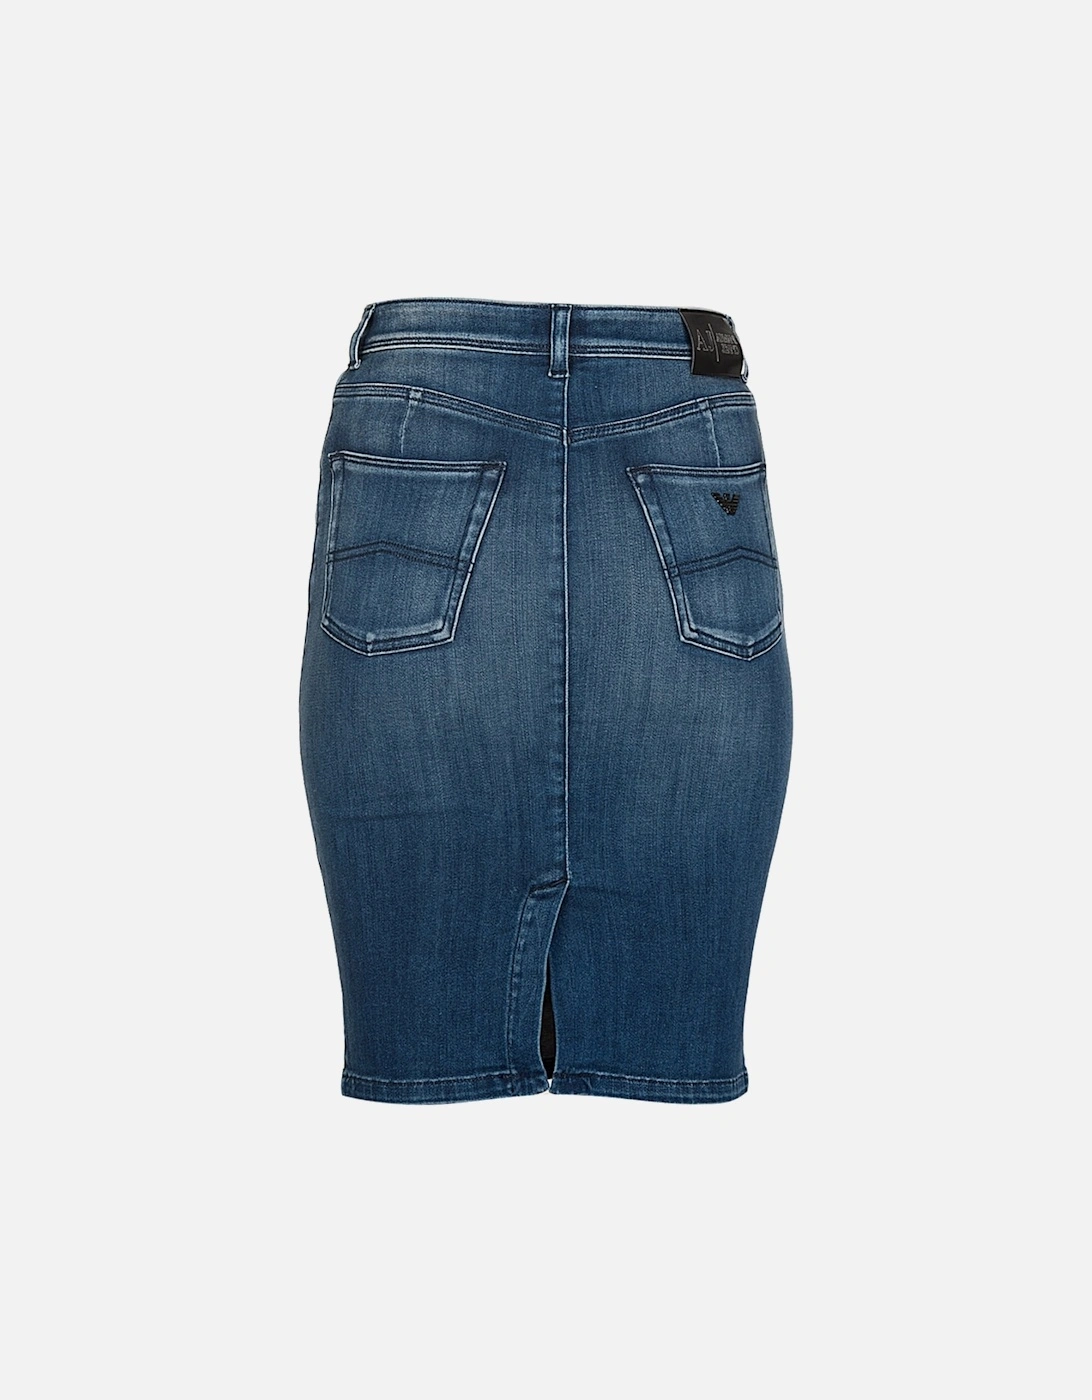 Jeans Women's Denim Midi Skirt Blue